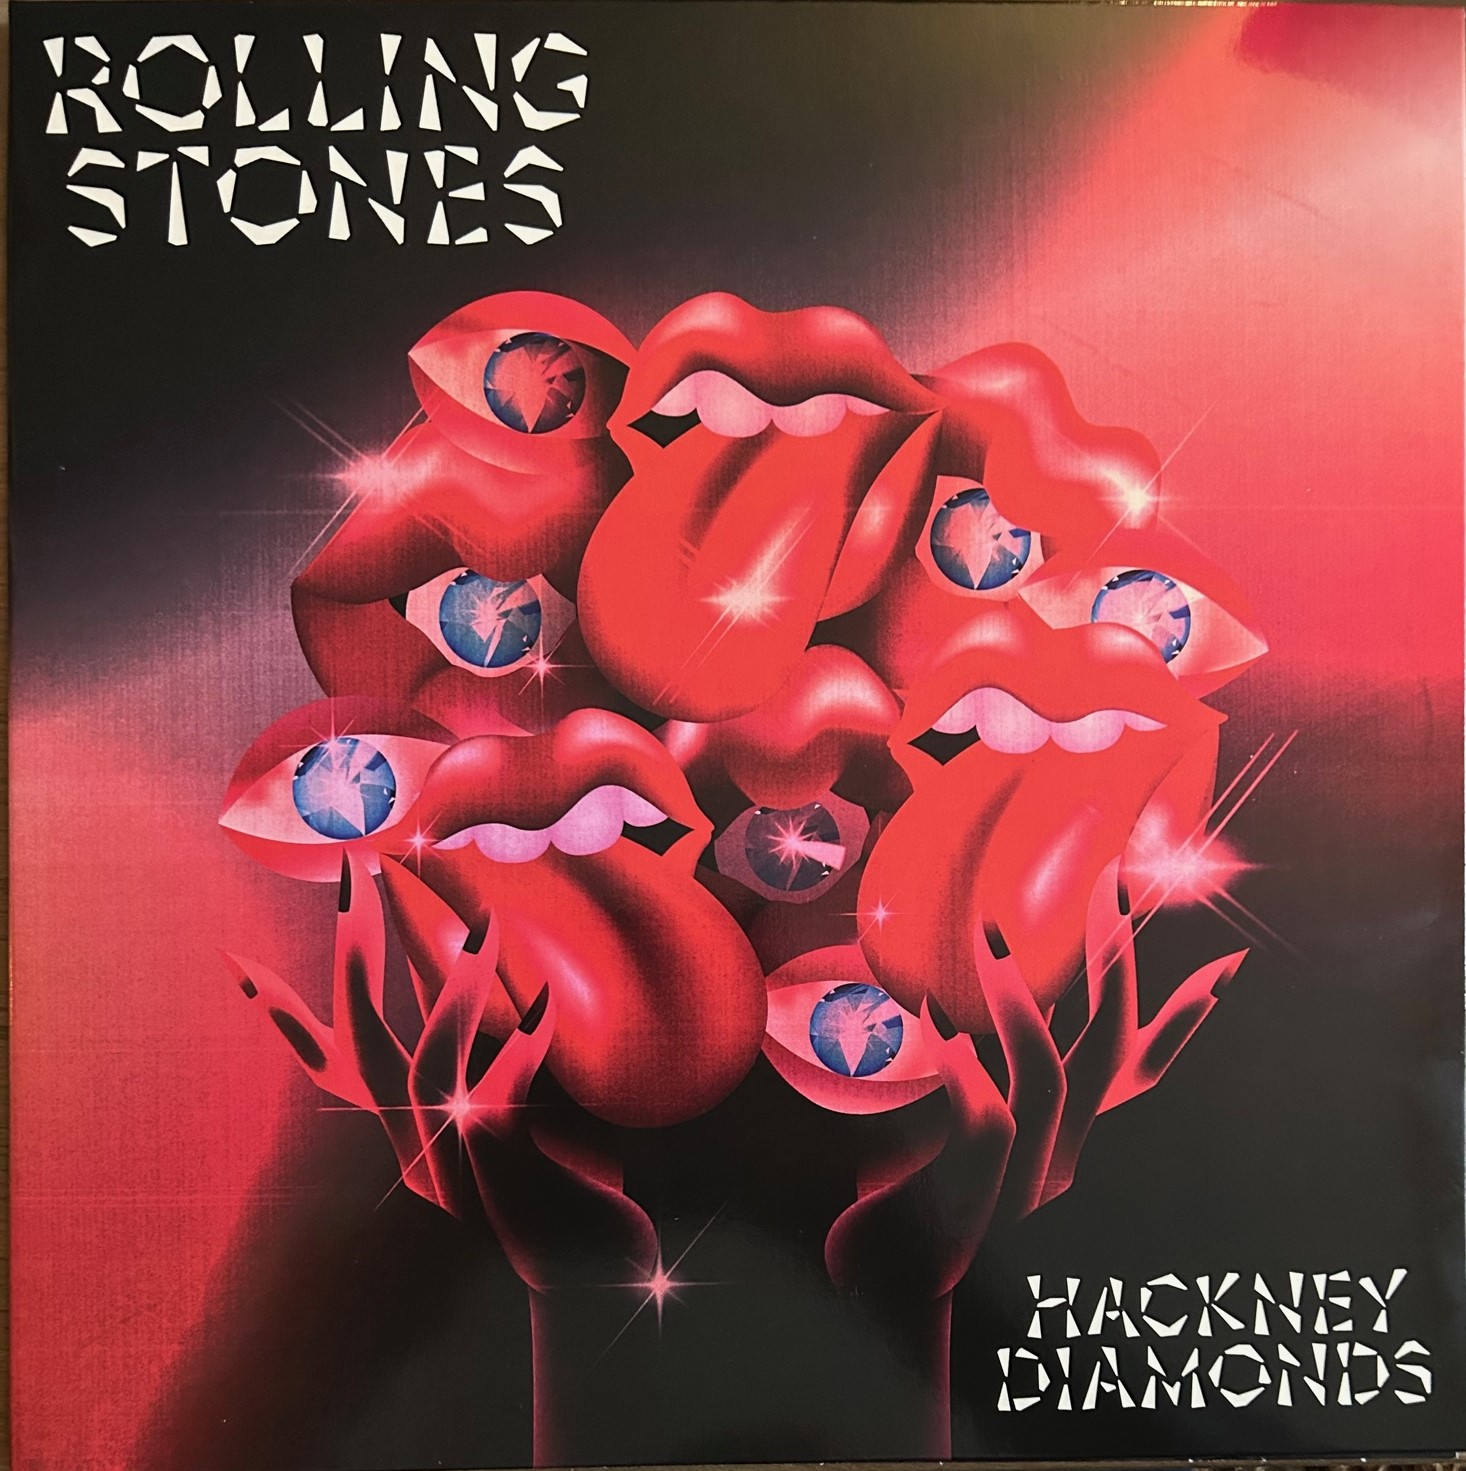 The Rolling Stones - Hackney Diamonds in DTS-wav (op speciaal verZoek )